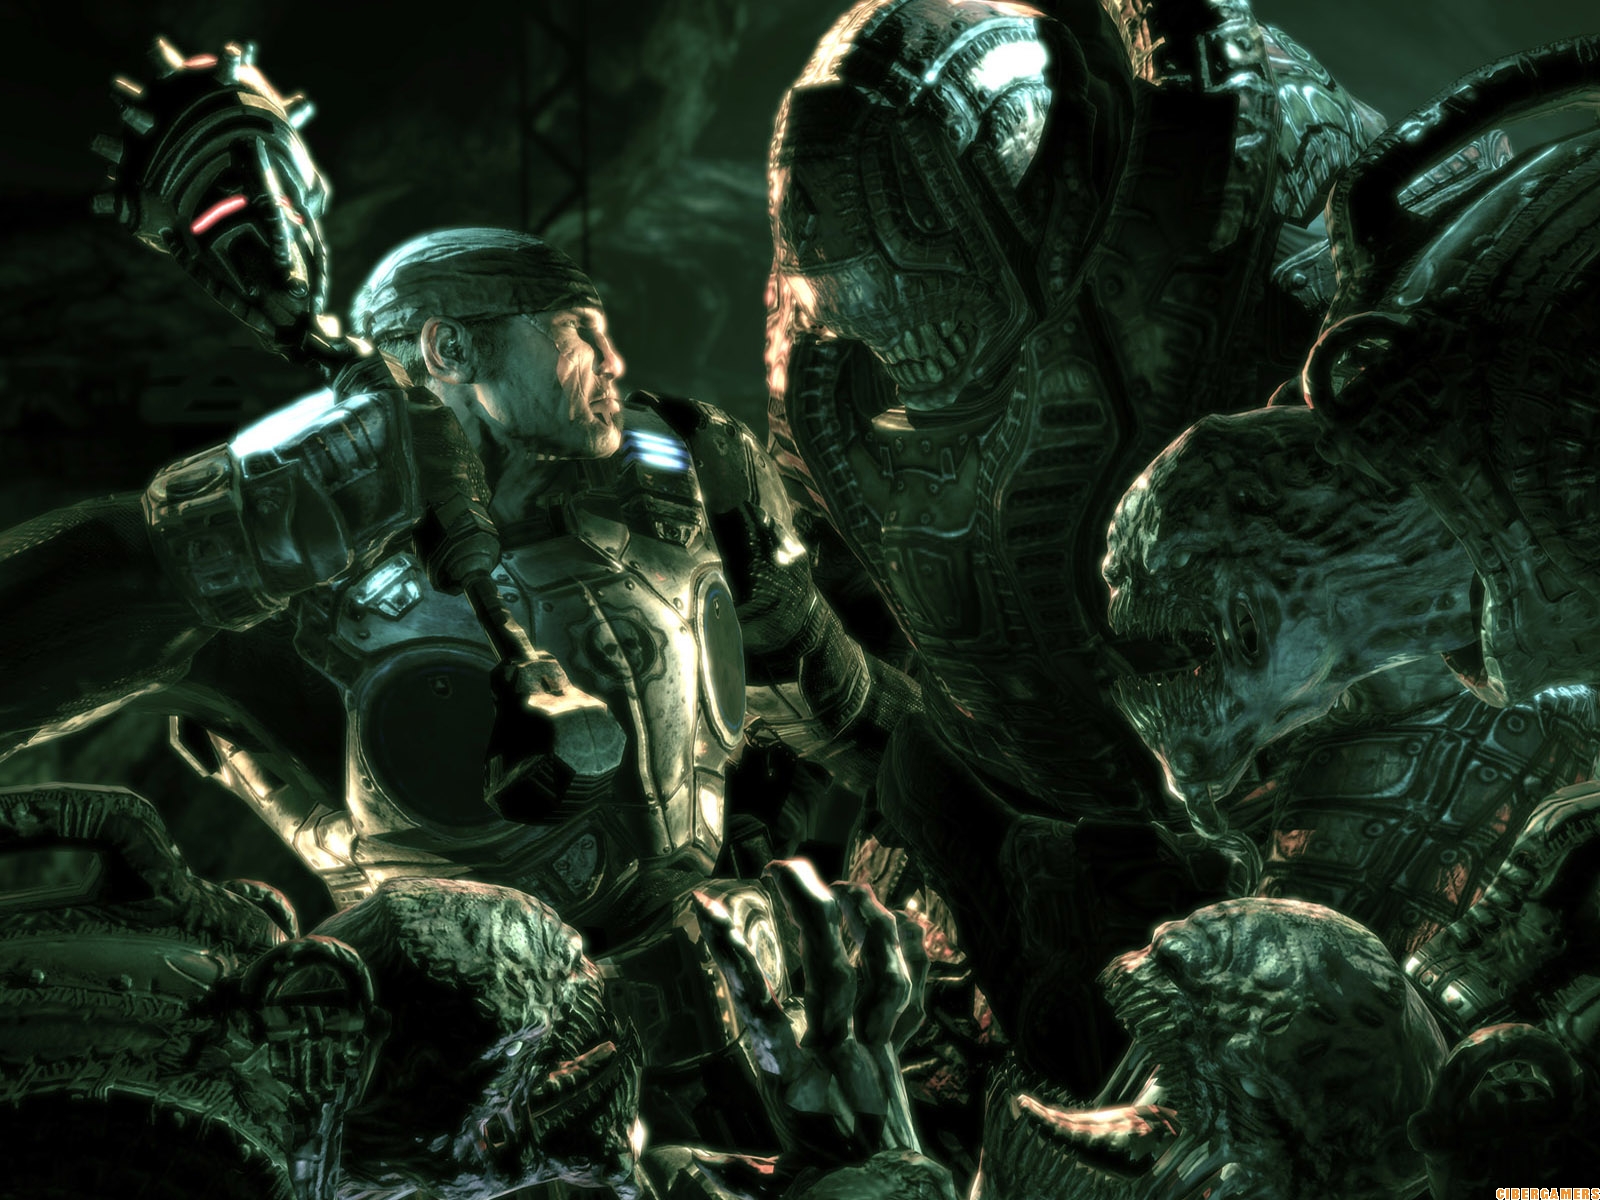 Gears of War 3 Hi-Def Screenshots and Merchandise